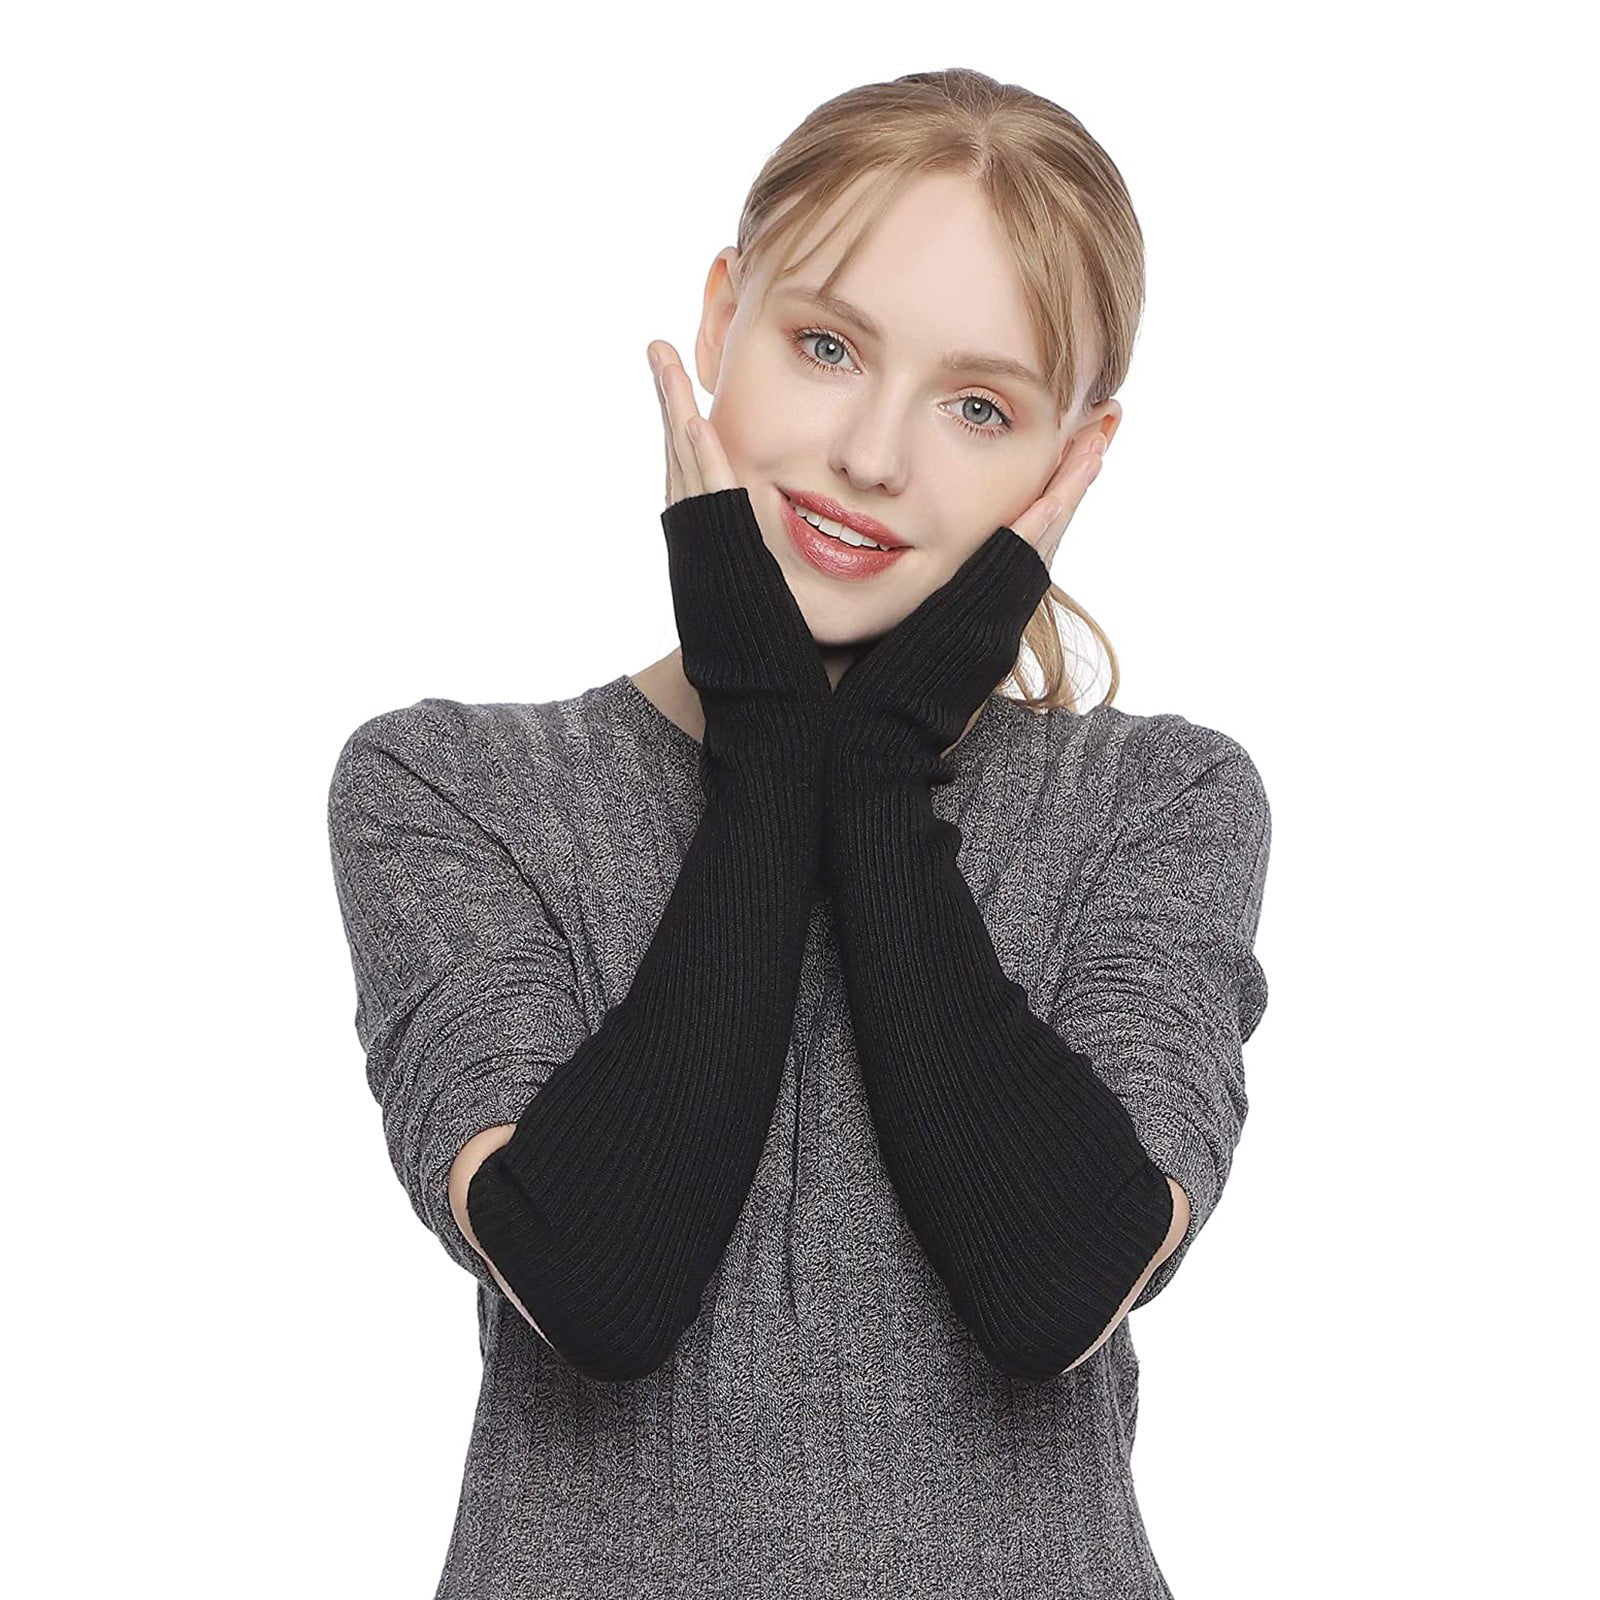 Cashmere fingerless gloves for women, soft stylish and warm cashmere  fingerless mittens, gift for her